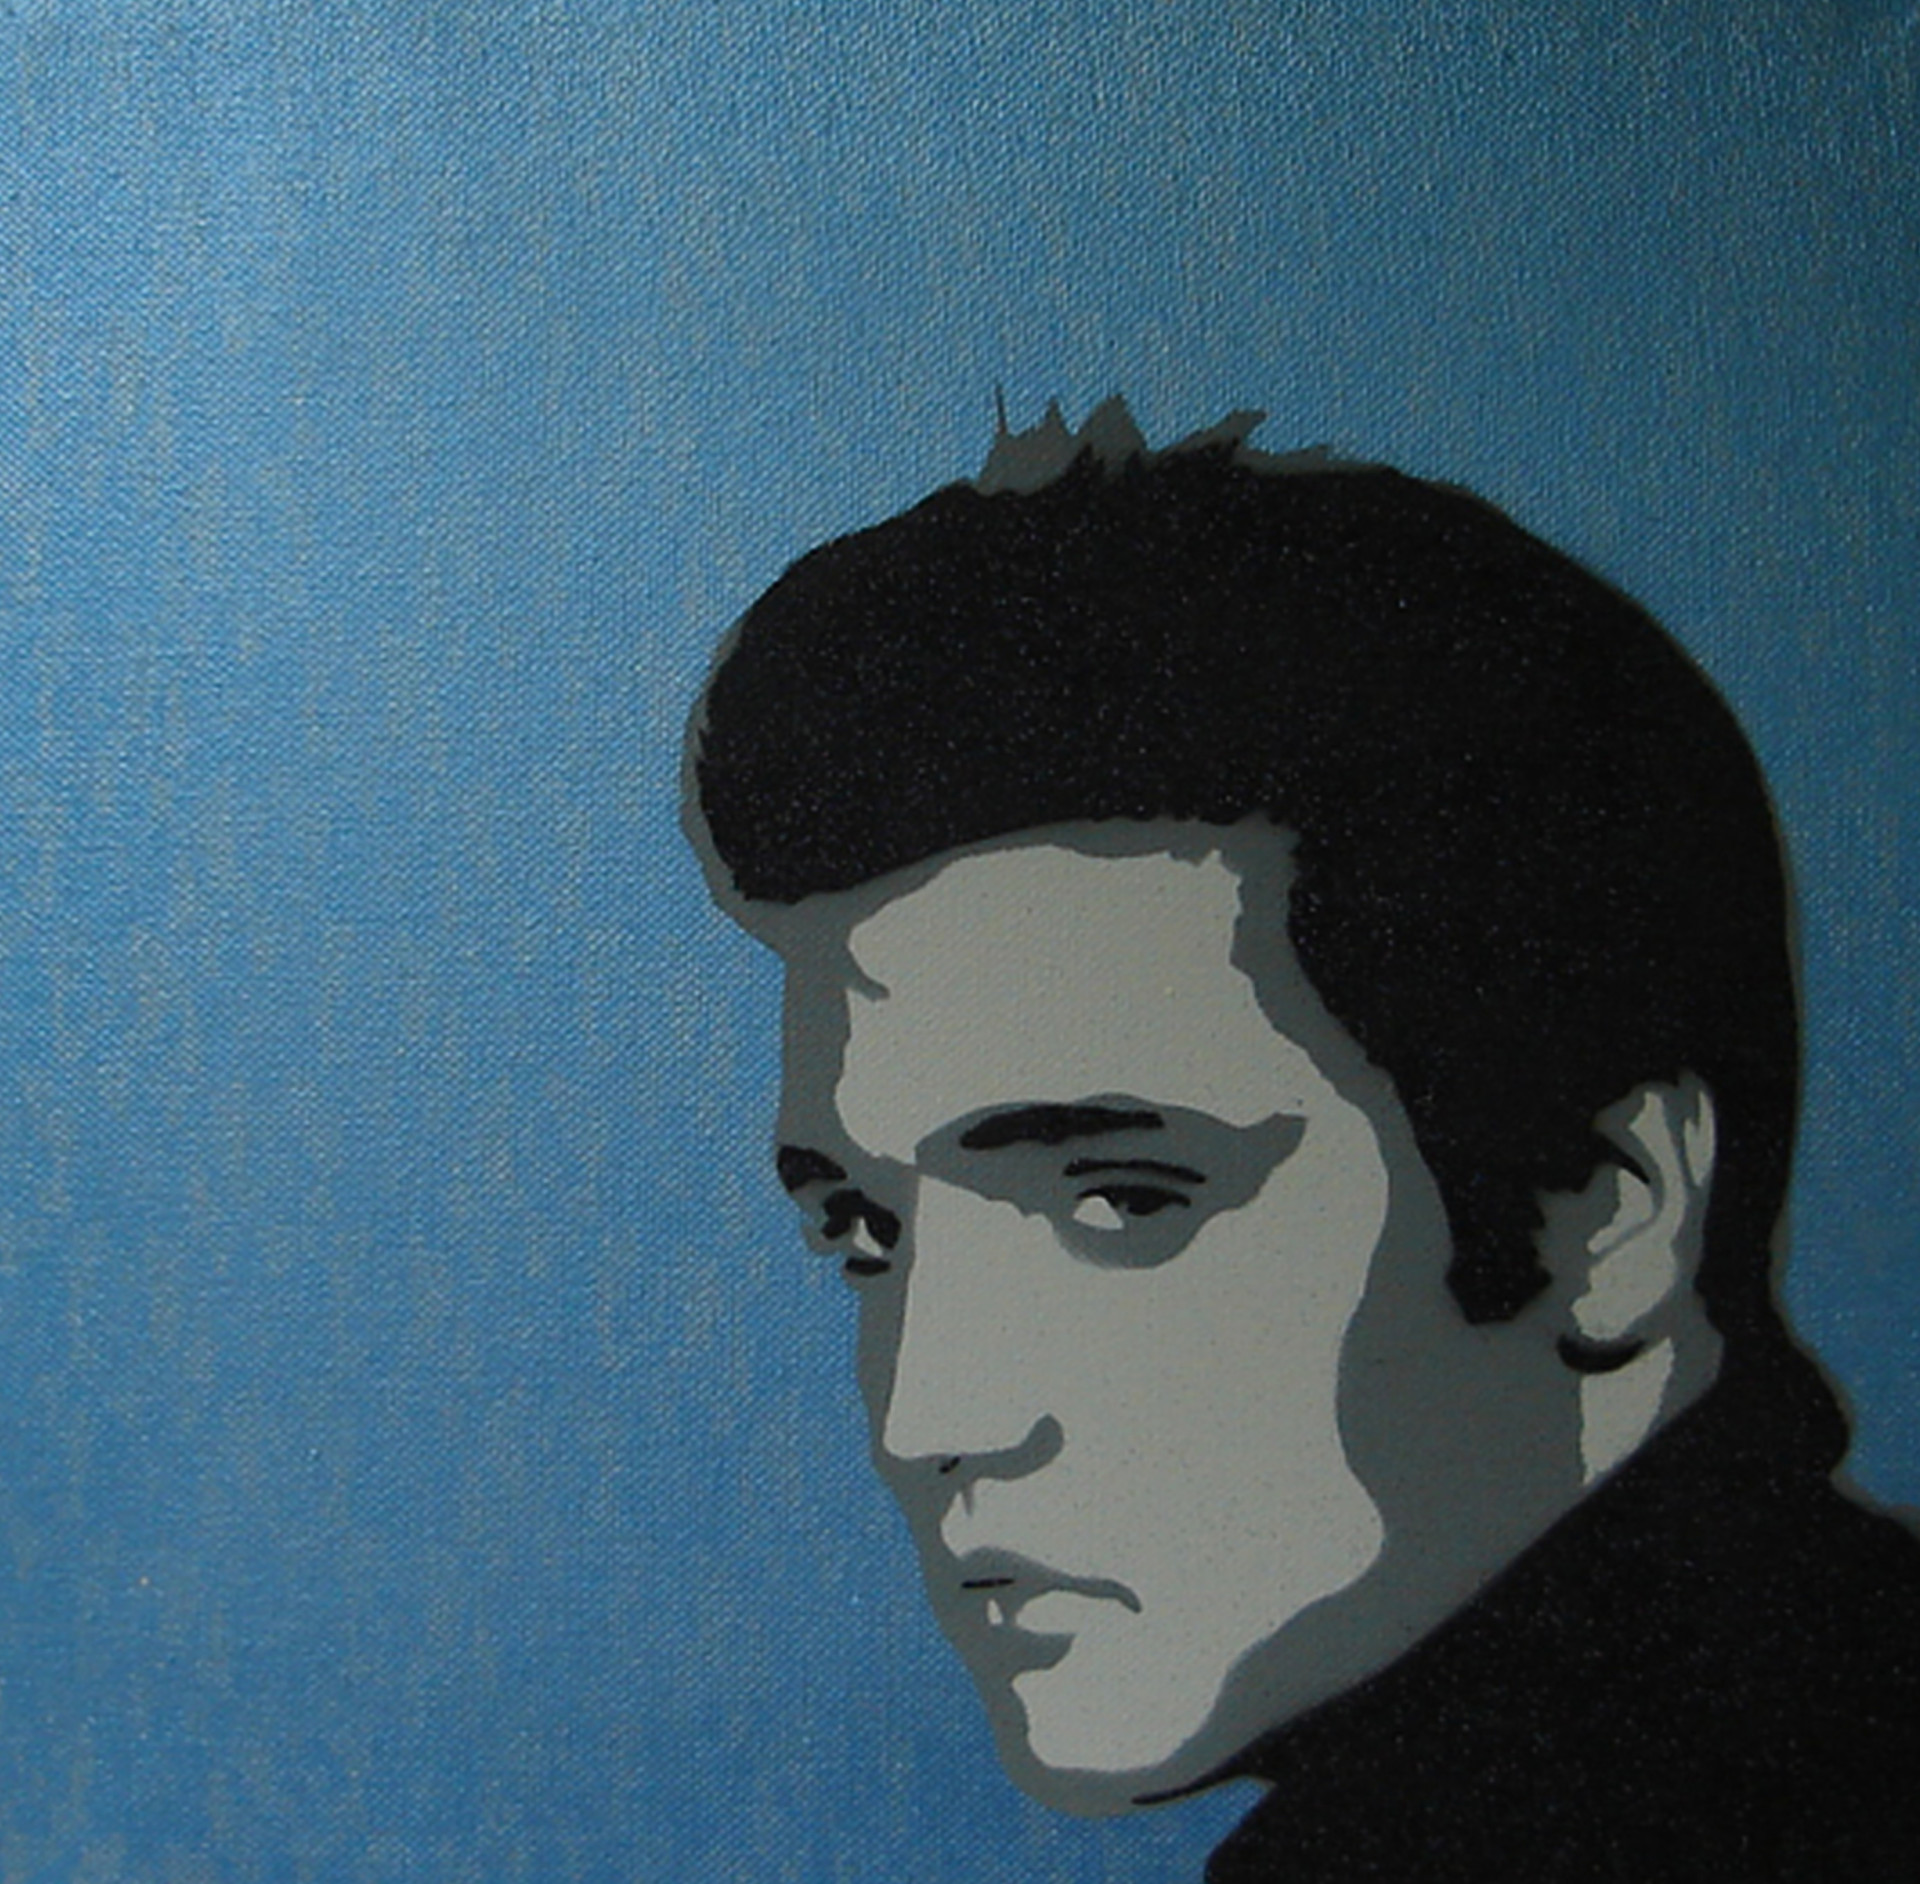 Elvis Presley: incríveis homenagens ao Rei do Rock em arte urbana